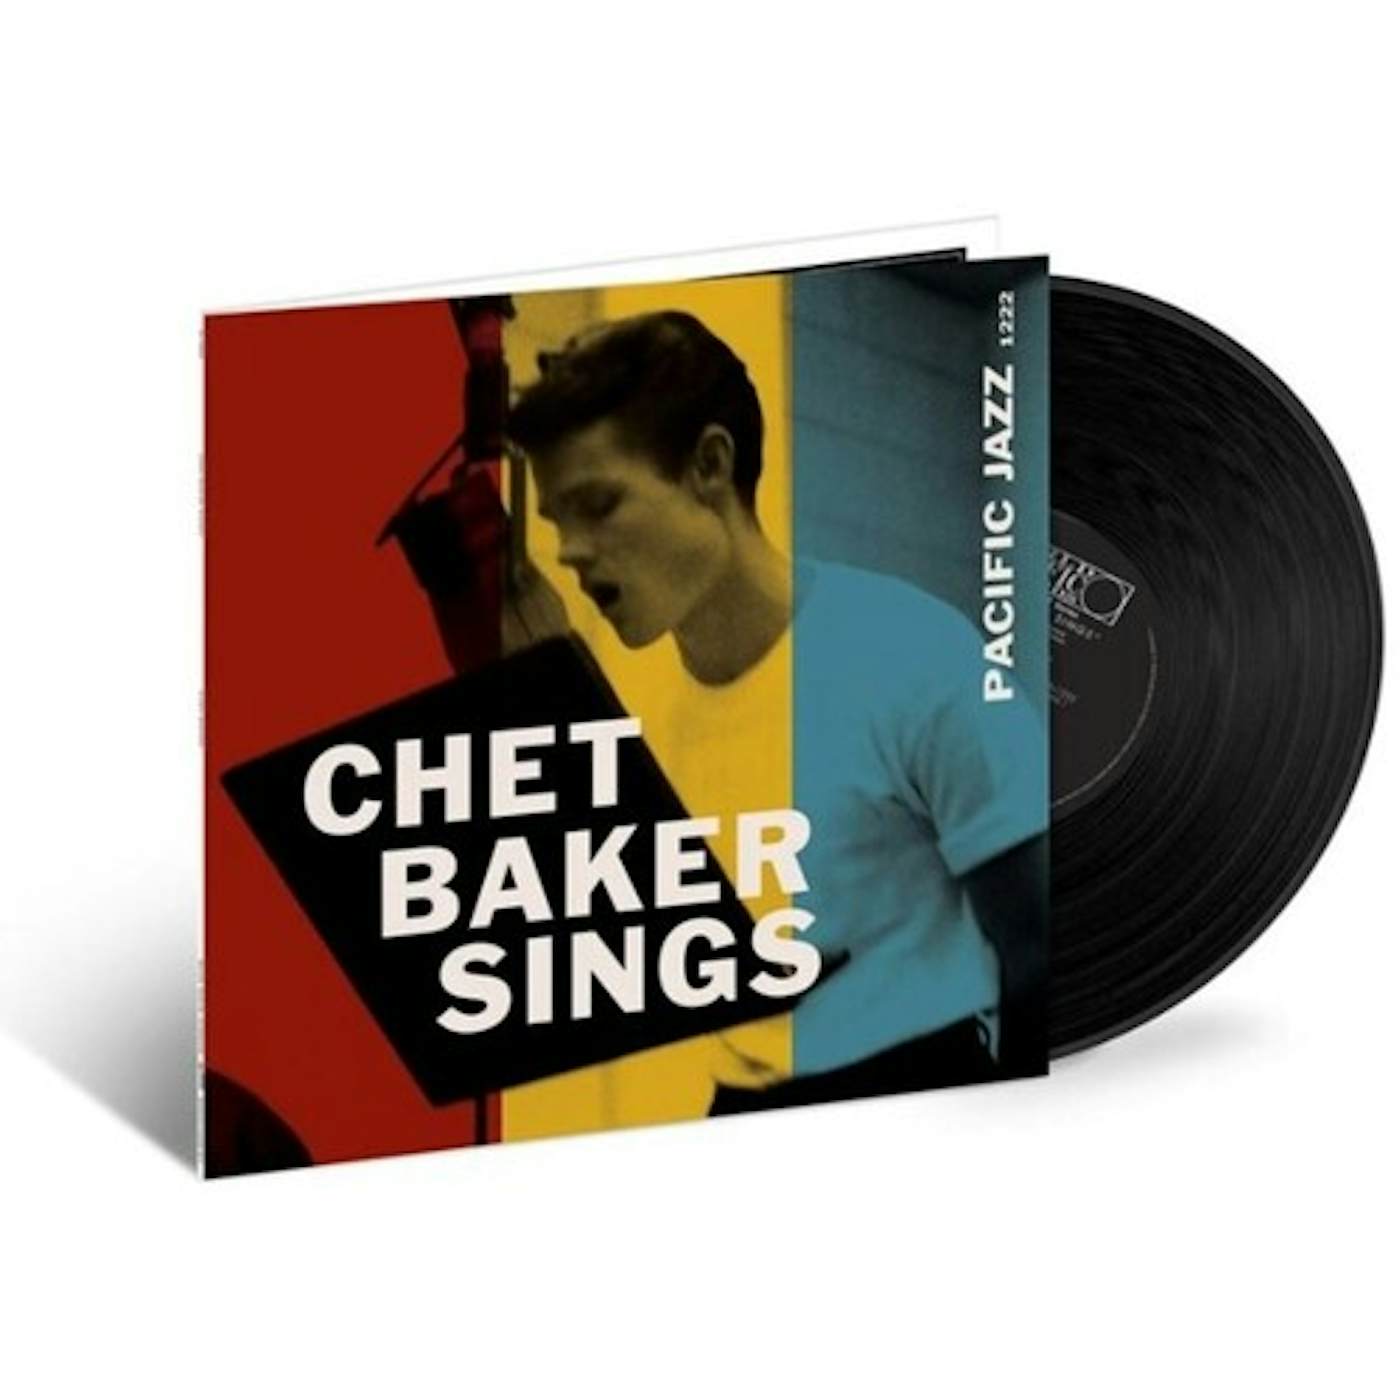 Chet Baker Sings Vinyl Record